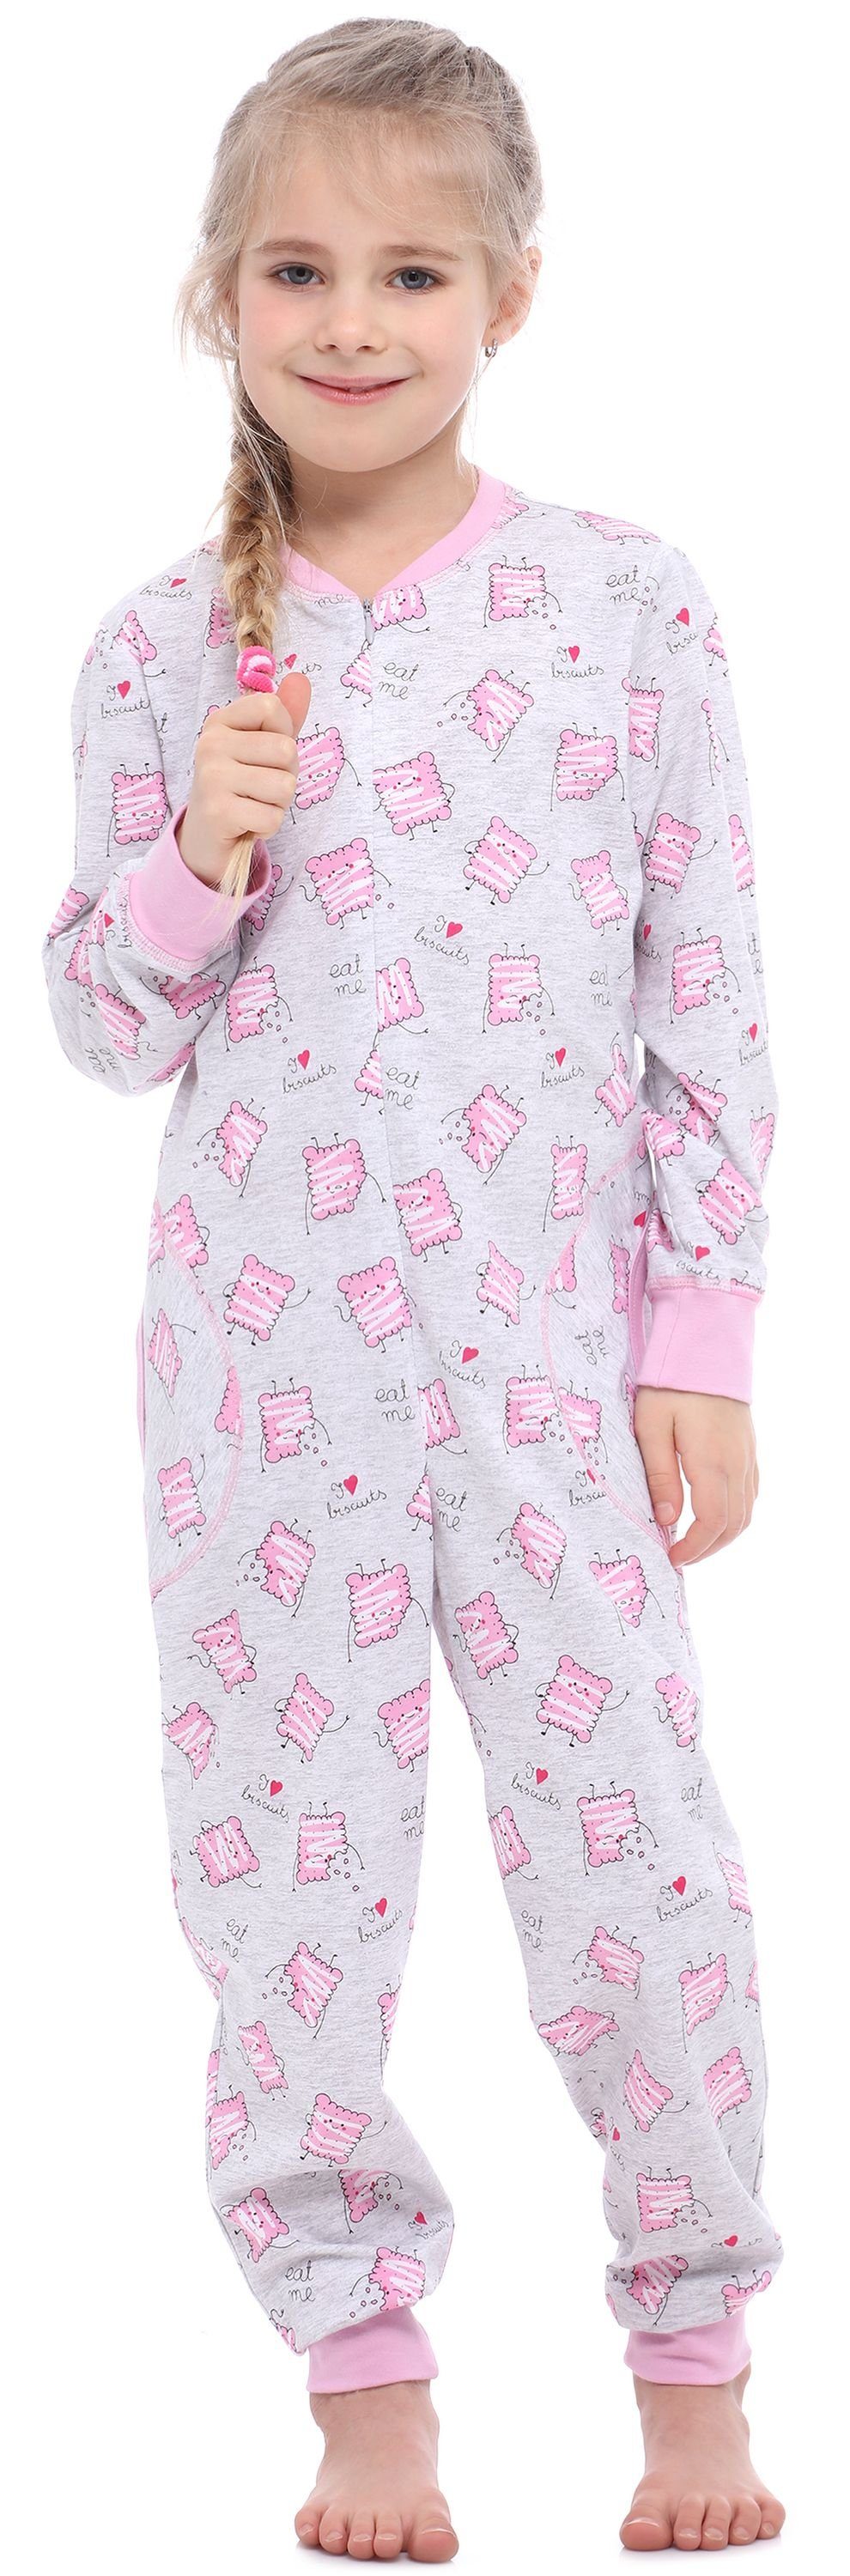 Schlafanzug MS10-186 Jumpsuit Merry Style Mädchen Kekse Melange Schlafanzug